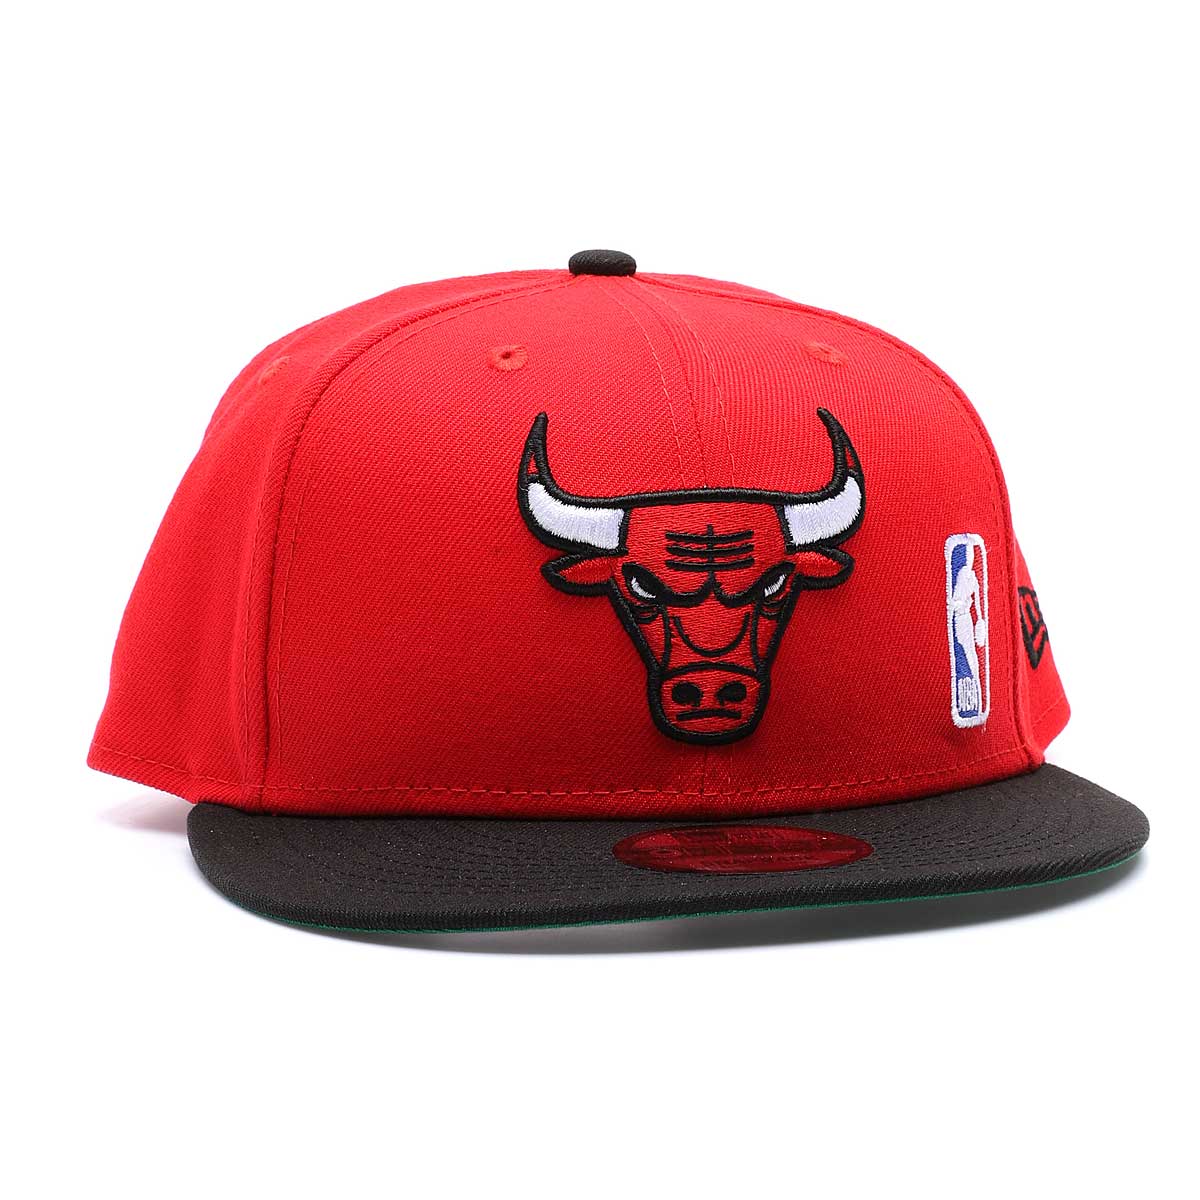 New Era Nba 940 Chicago Bulls, Red